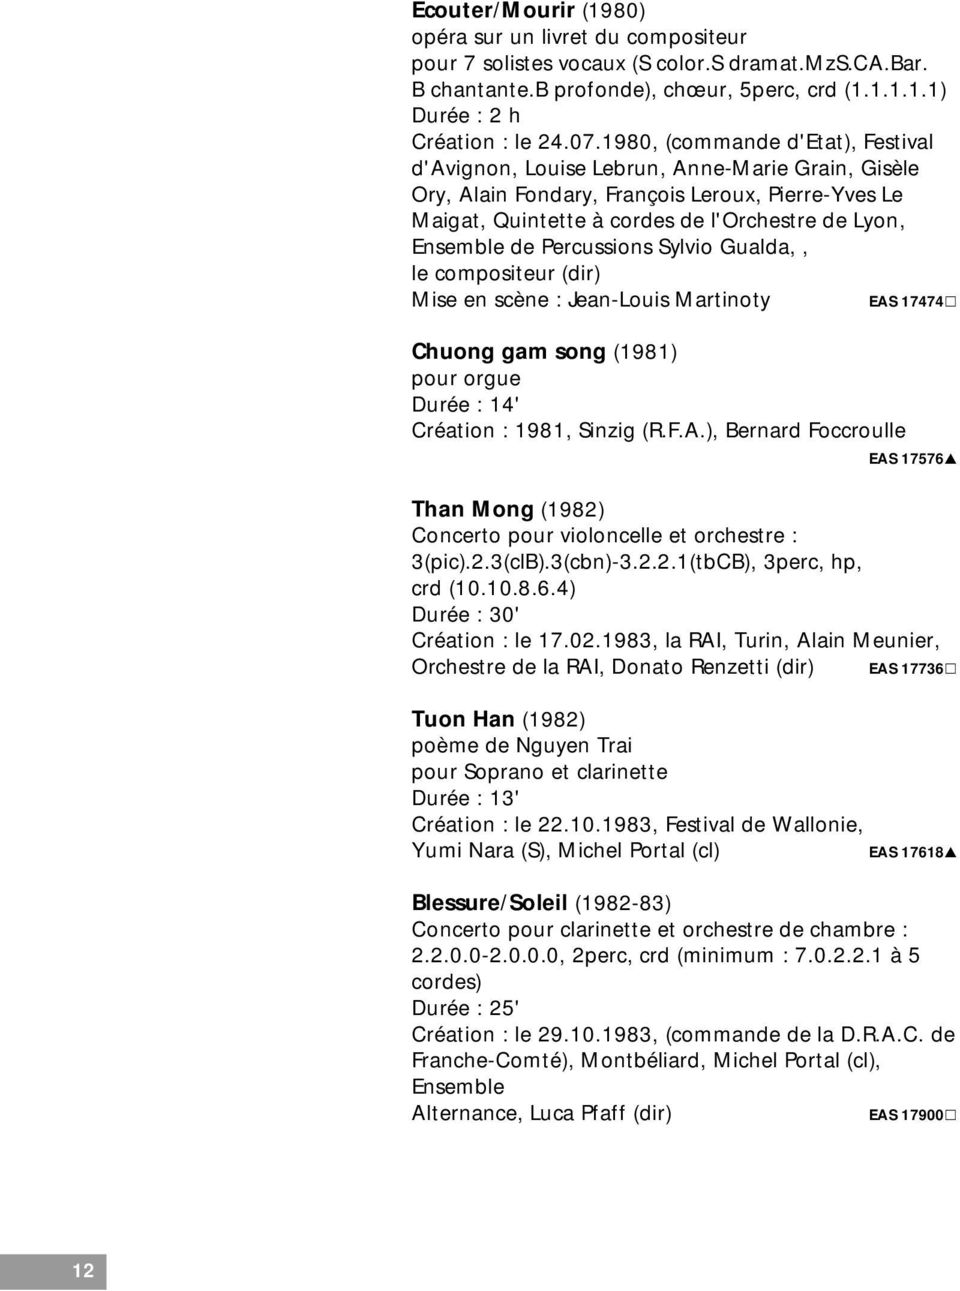 Percussions Sylvio Gualda,, le compositeur (dir) Mise en scène : Jean-Louis Martinoty EAS 17474 Chuong gam song (1981) pour orgue Durée : 14' Création : 1981, Sinzig (R.F.A.), Bernard Foccroulle EAS 17576 Than Mong (1982) Concerto pour violoncelle et orchestre : 3(pic).